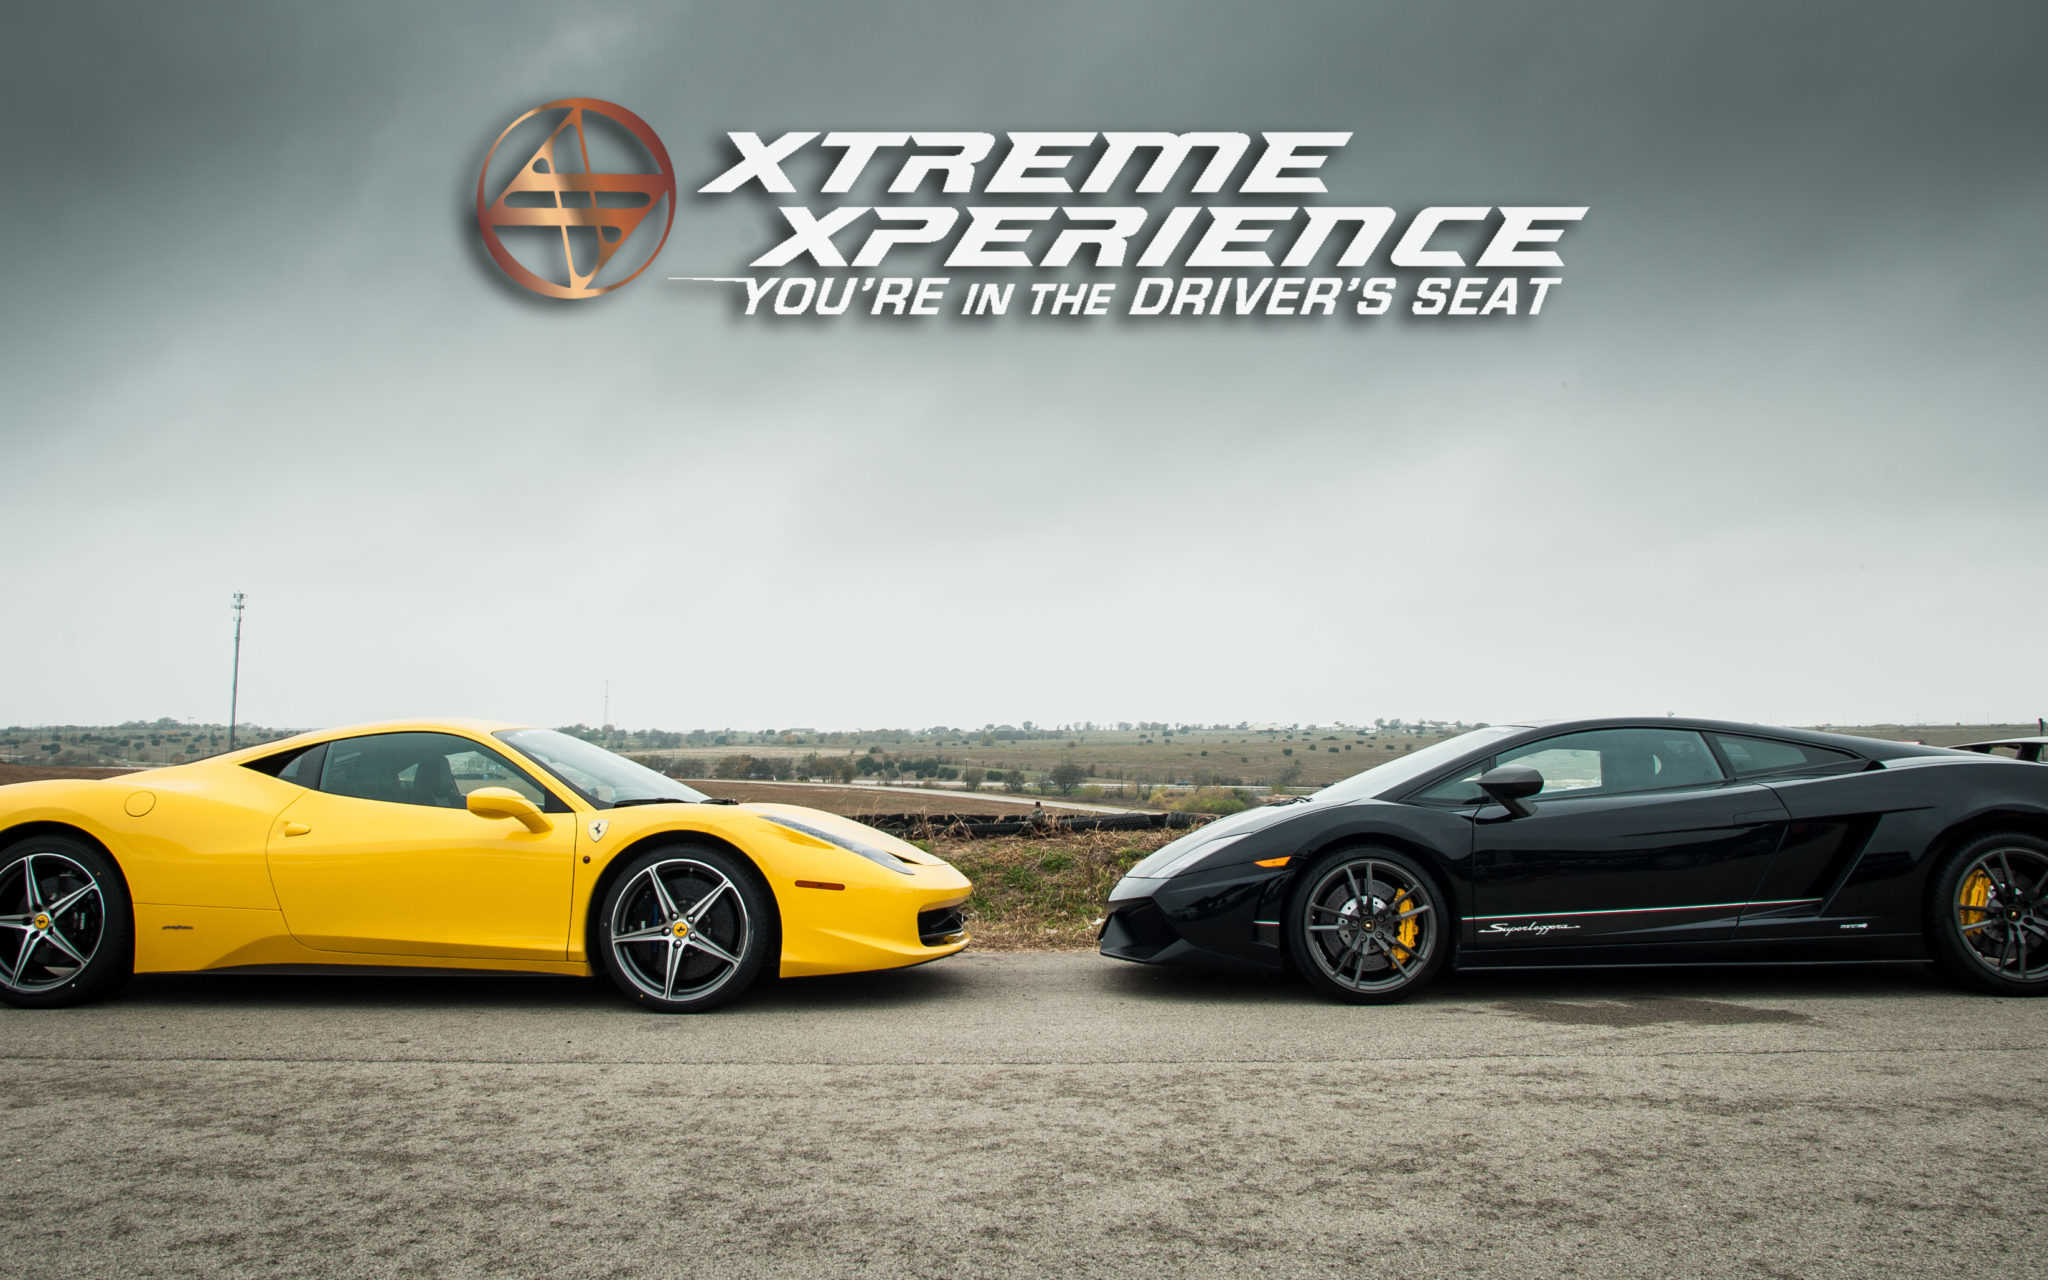 Ferrari Vs. Lamborghini Wallpaper - Xtreme Xperience